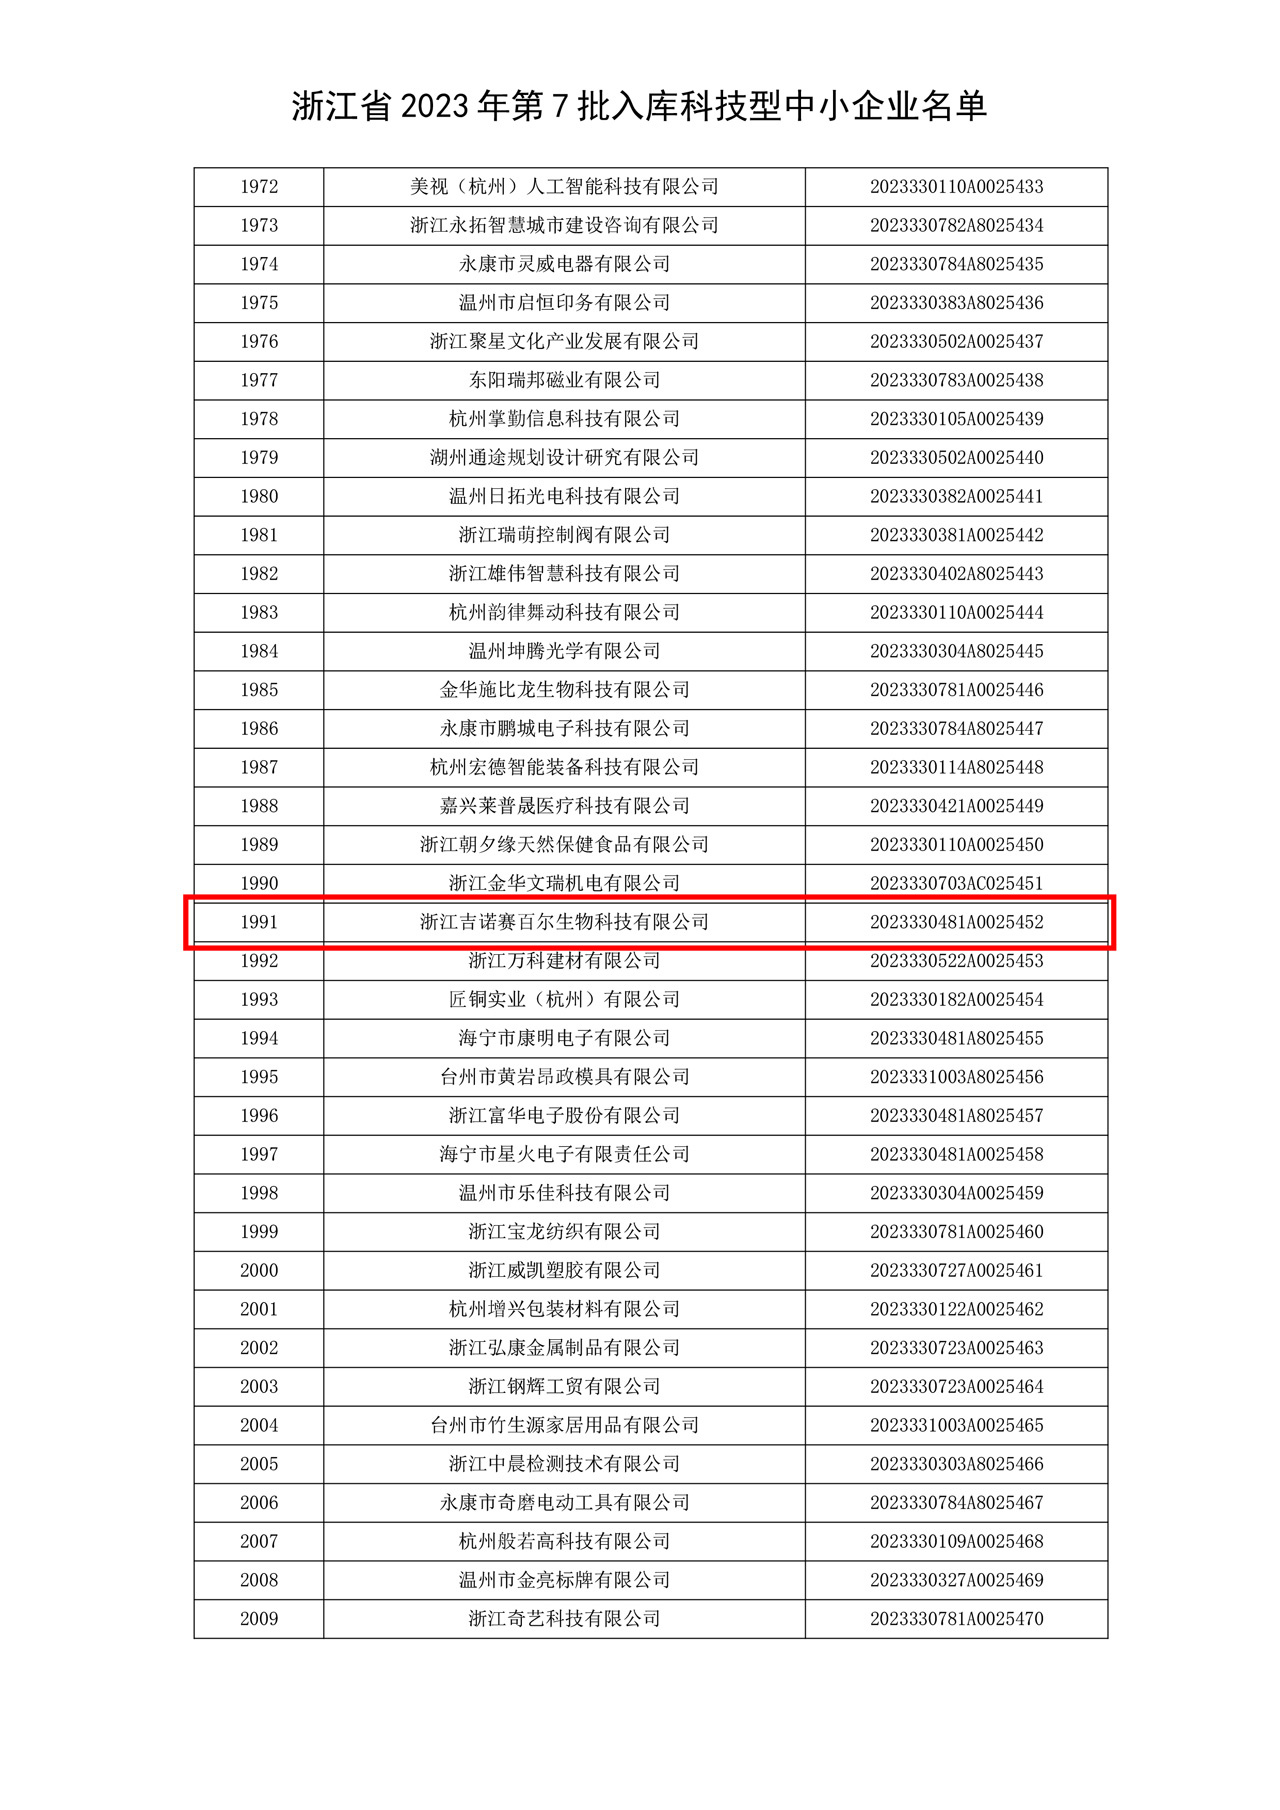 浙江省2023年第7批入库科技型中小企业名单 53.jpg